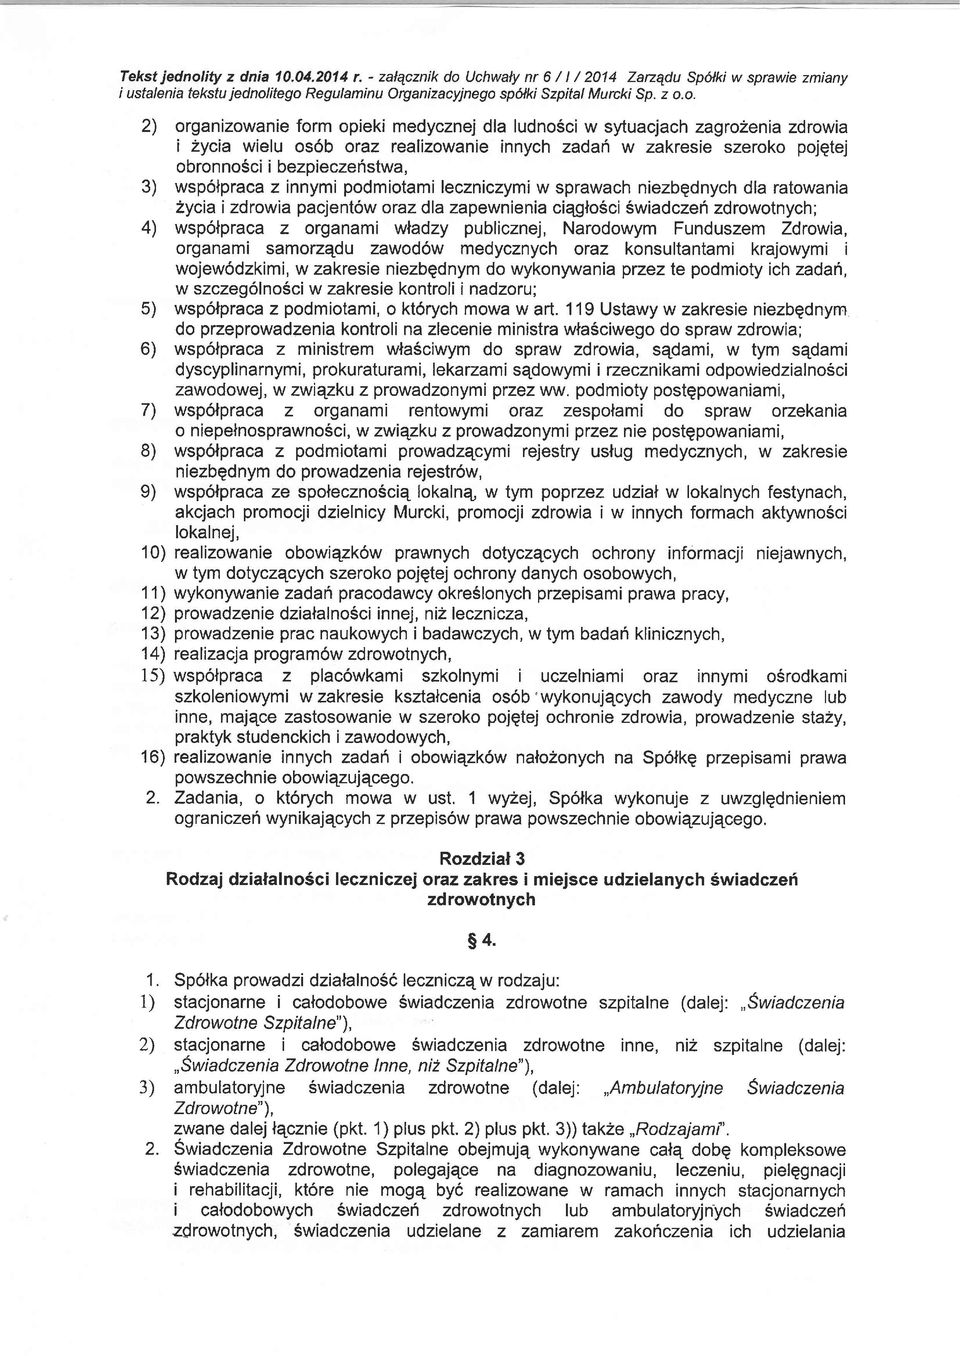 Uchwalynr6/l/2014 Zarzqdu Spcilki wsprawiezmiany i ustalenia tekstu jednol